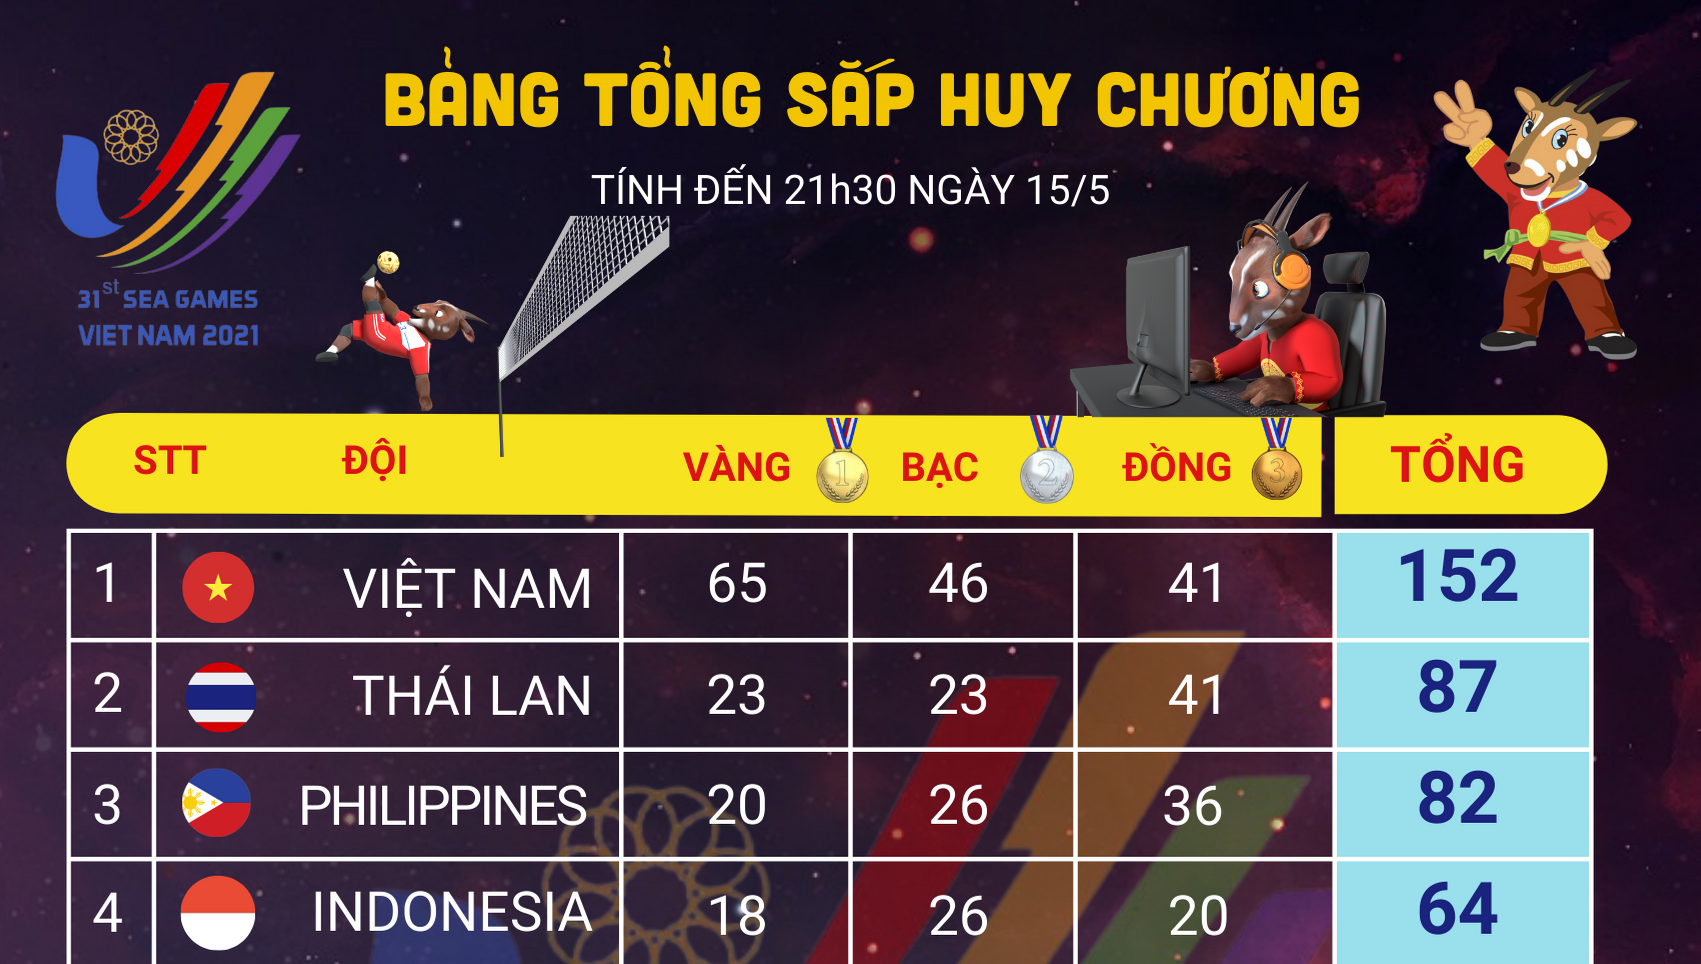 [Infographics] Bảng tổng sắp huy chương SEA Games 31 ngày 15/5: Việt Nam vững chắc ngôi đầu.